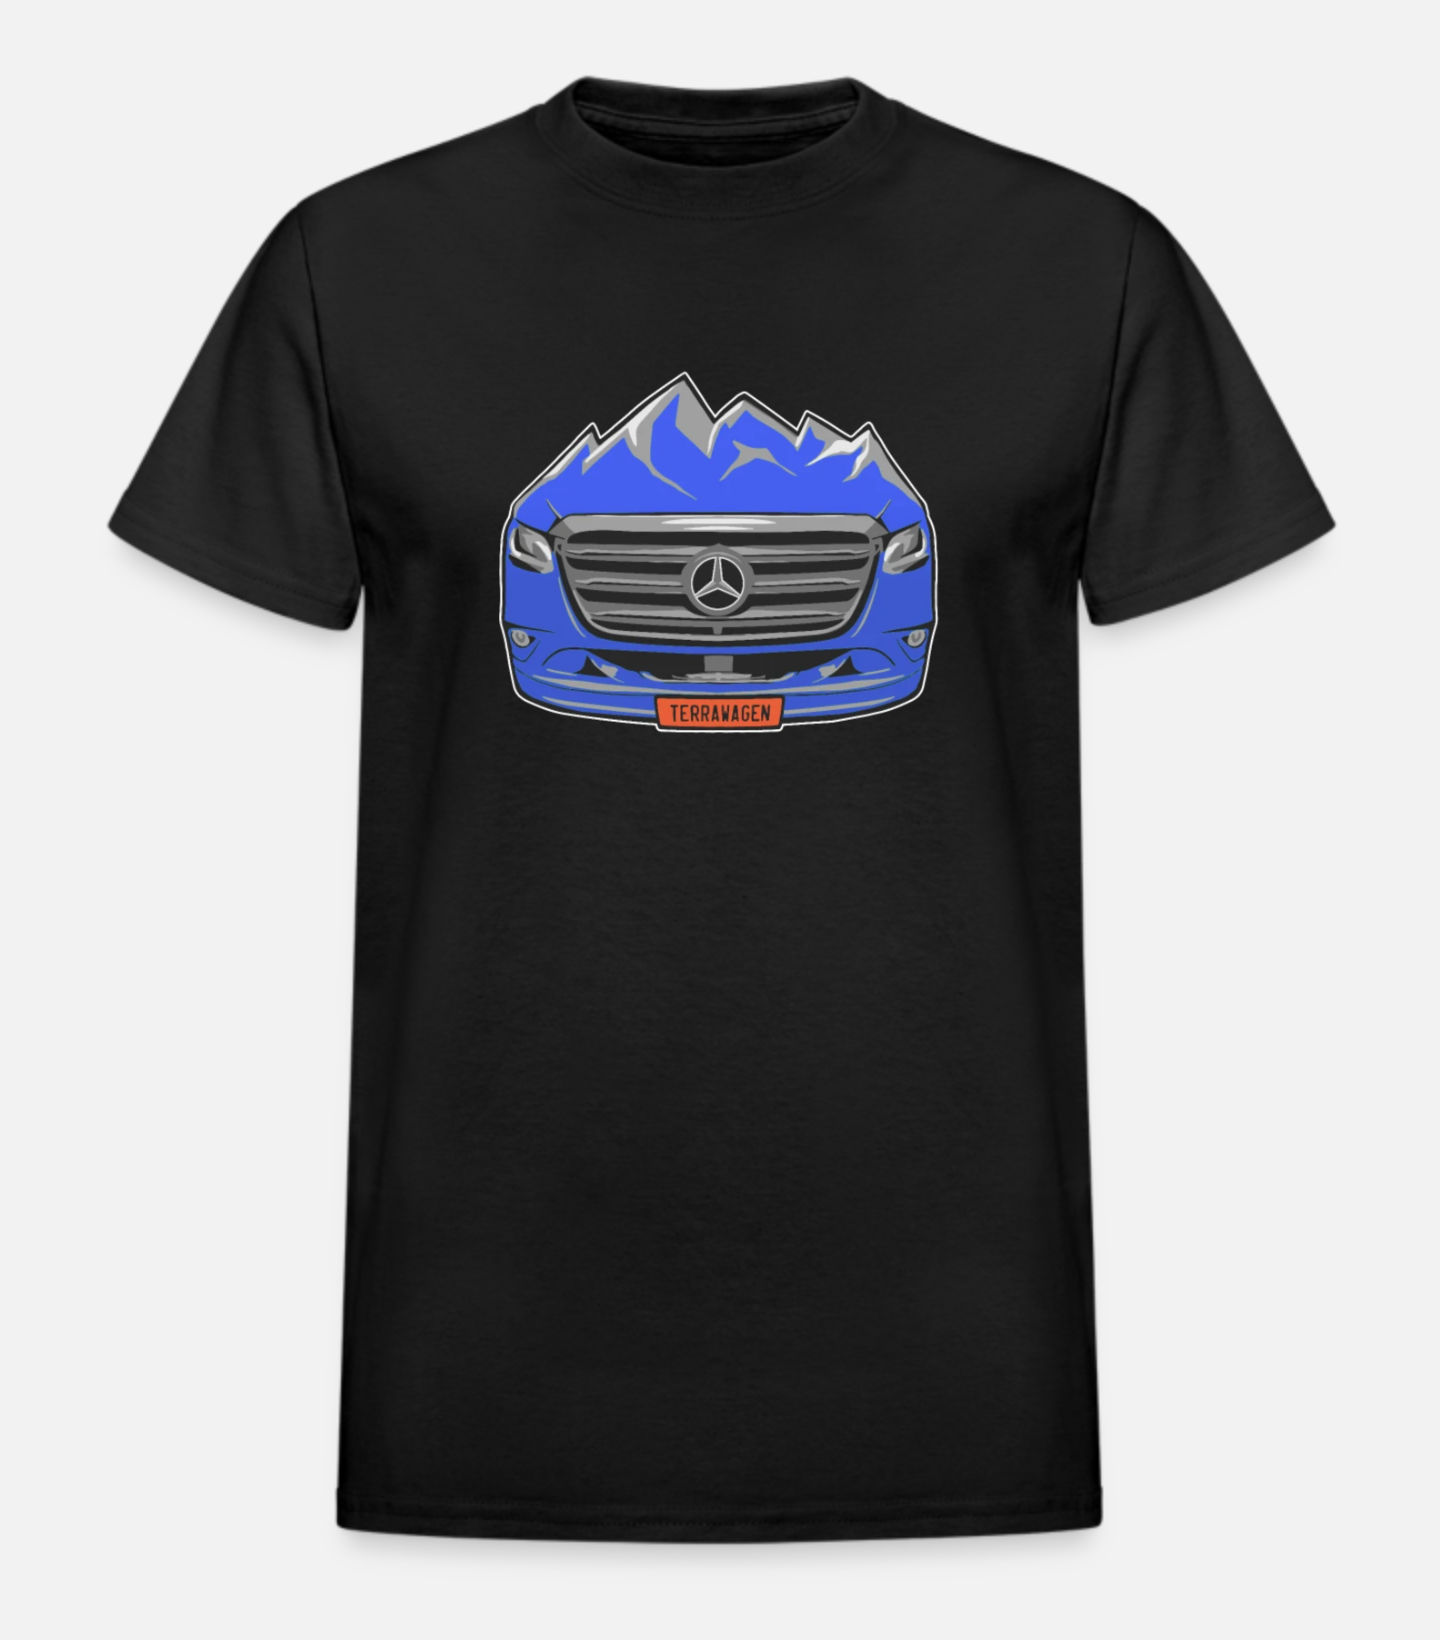 Terrawagen Mountain Grill T-Shirt